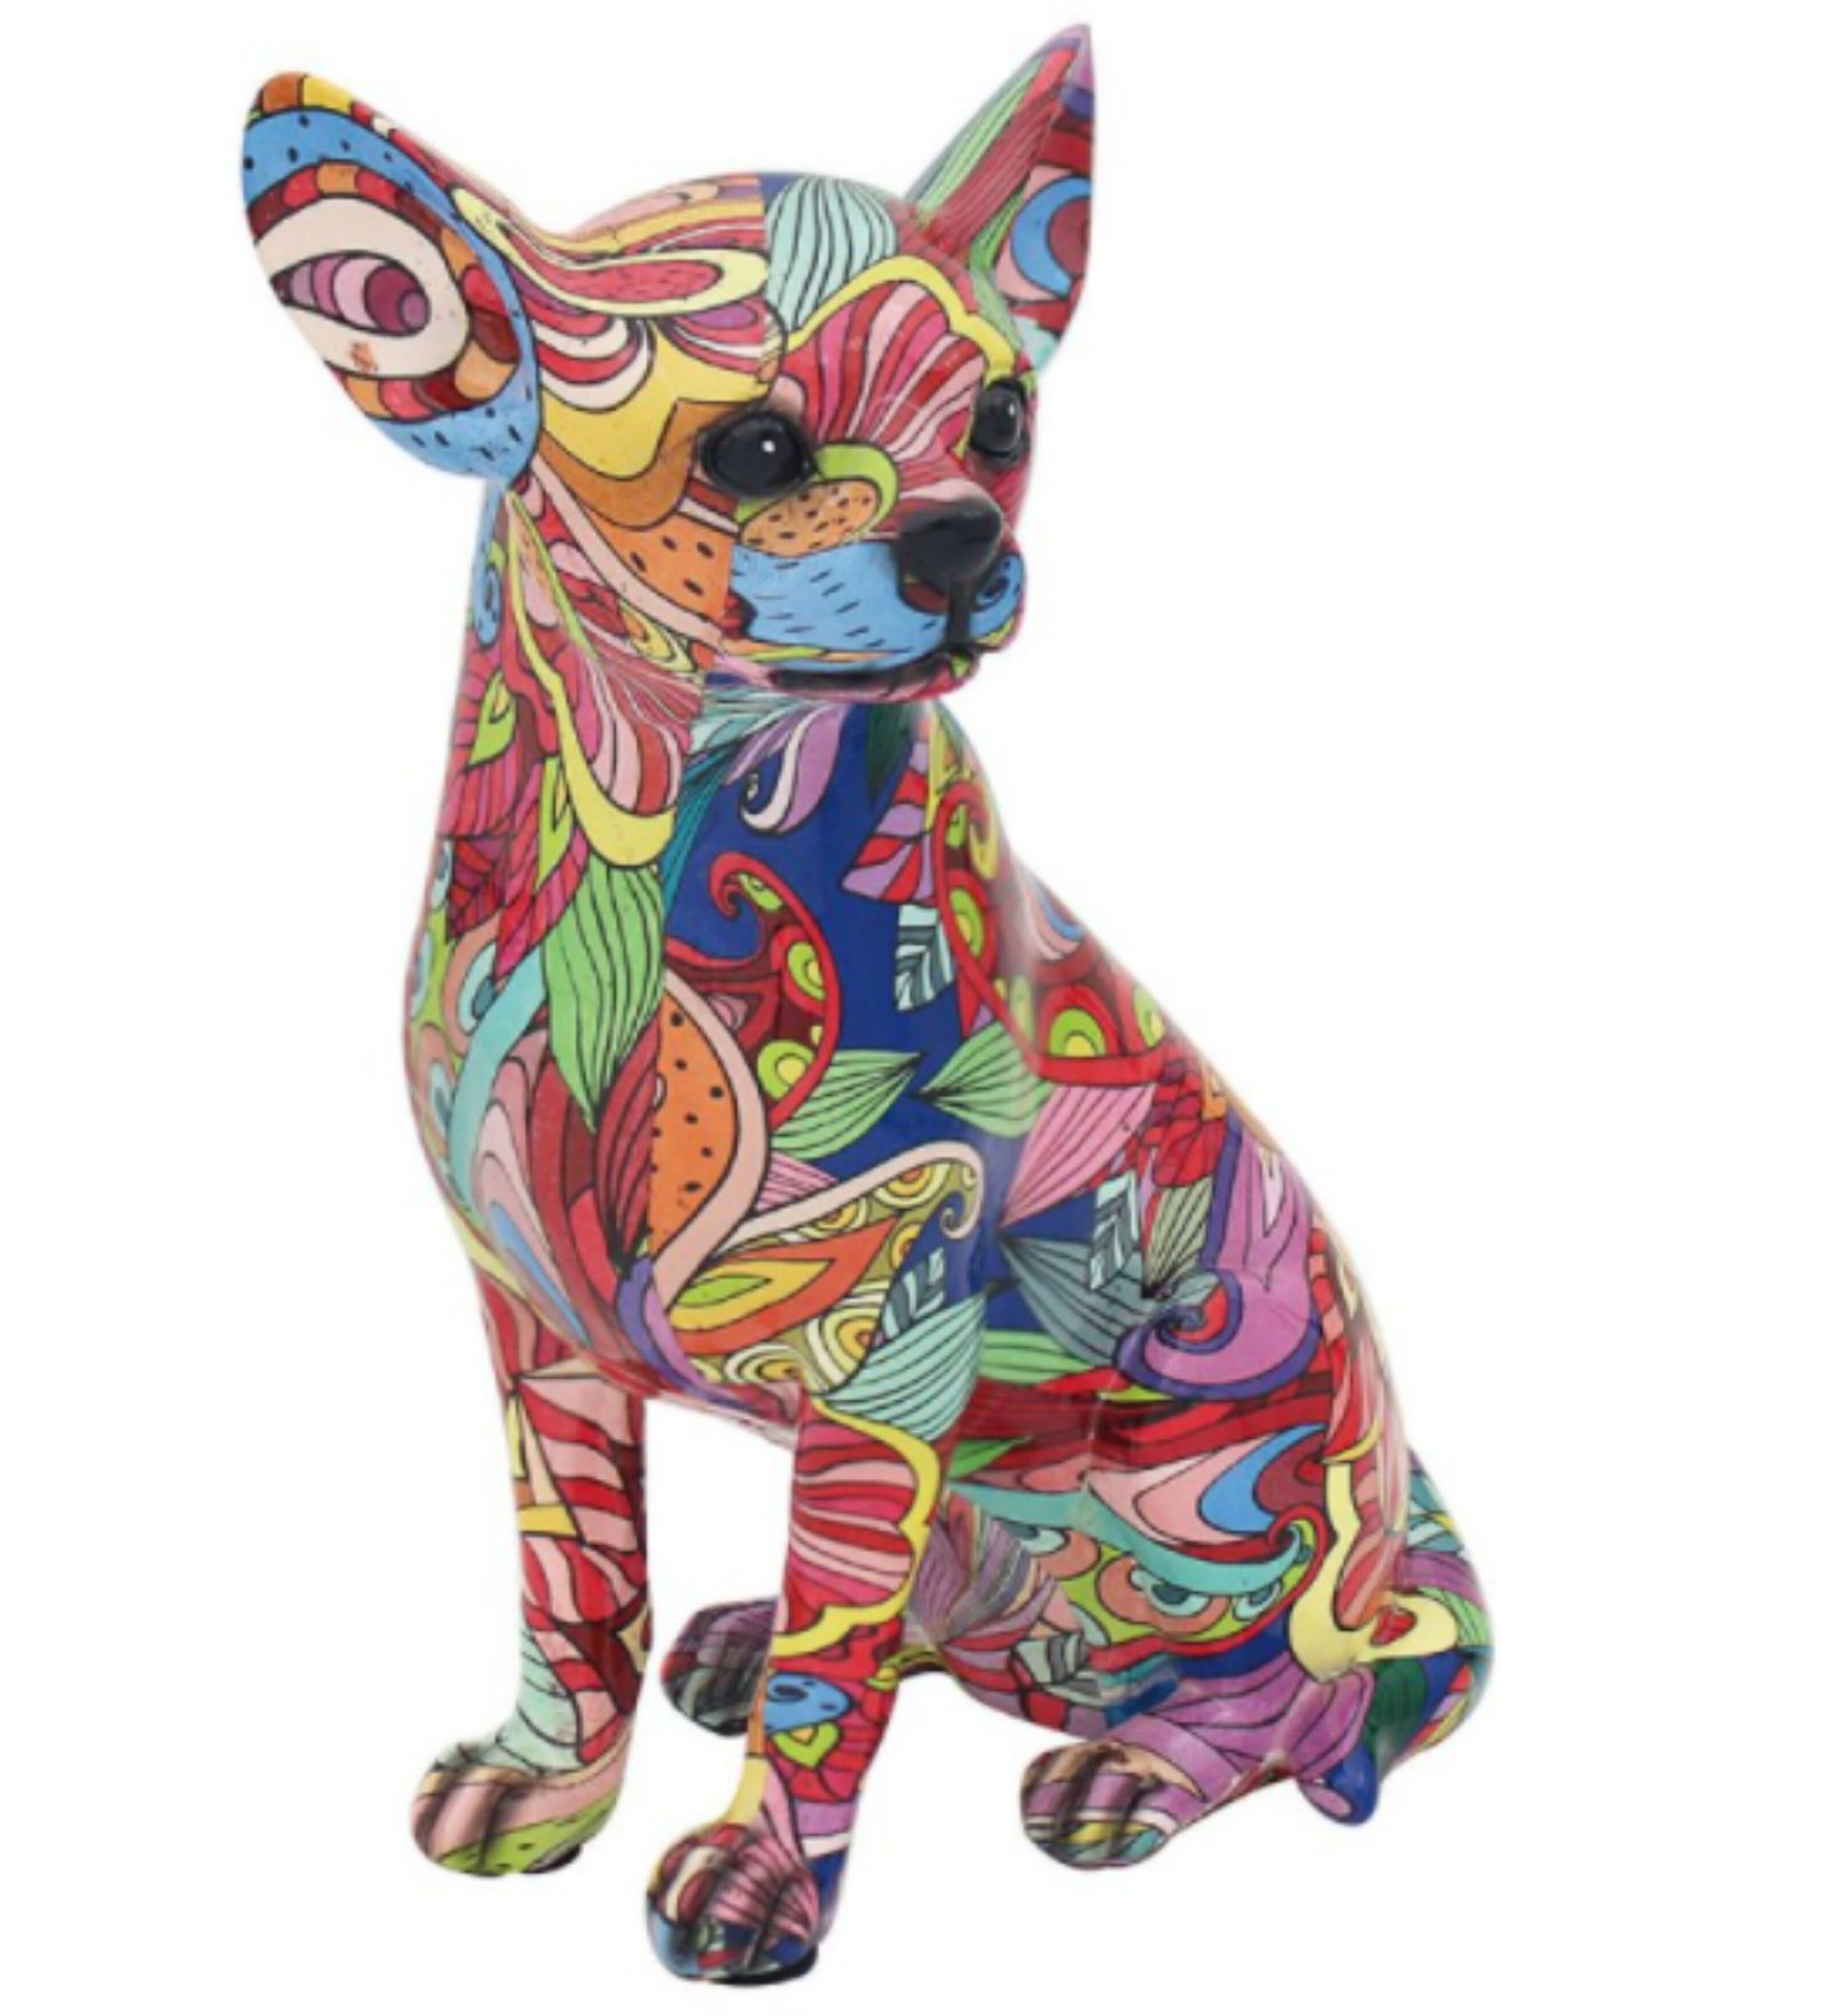 Kaufen Sie GROOVY ART leuchtend farbige sitzende Chihuahua-Ornamentfigur,  Chihuahua-Liebhabergeschenk zu Großhandelspreisen